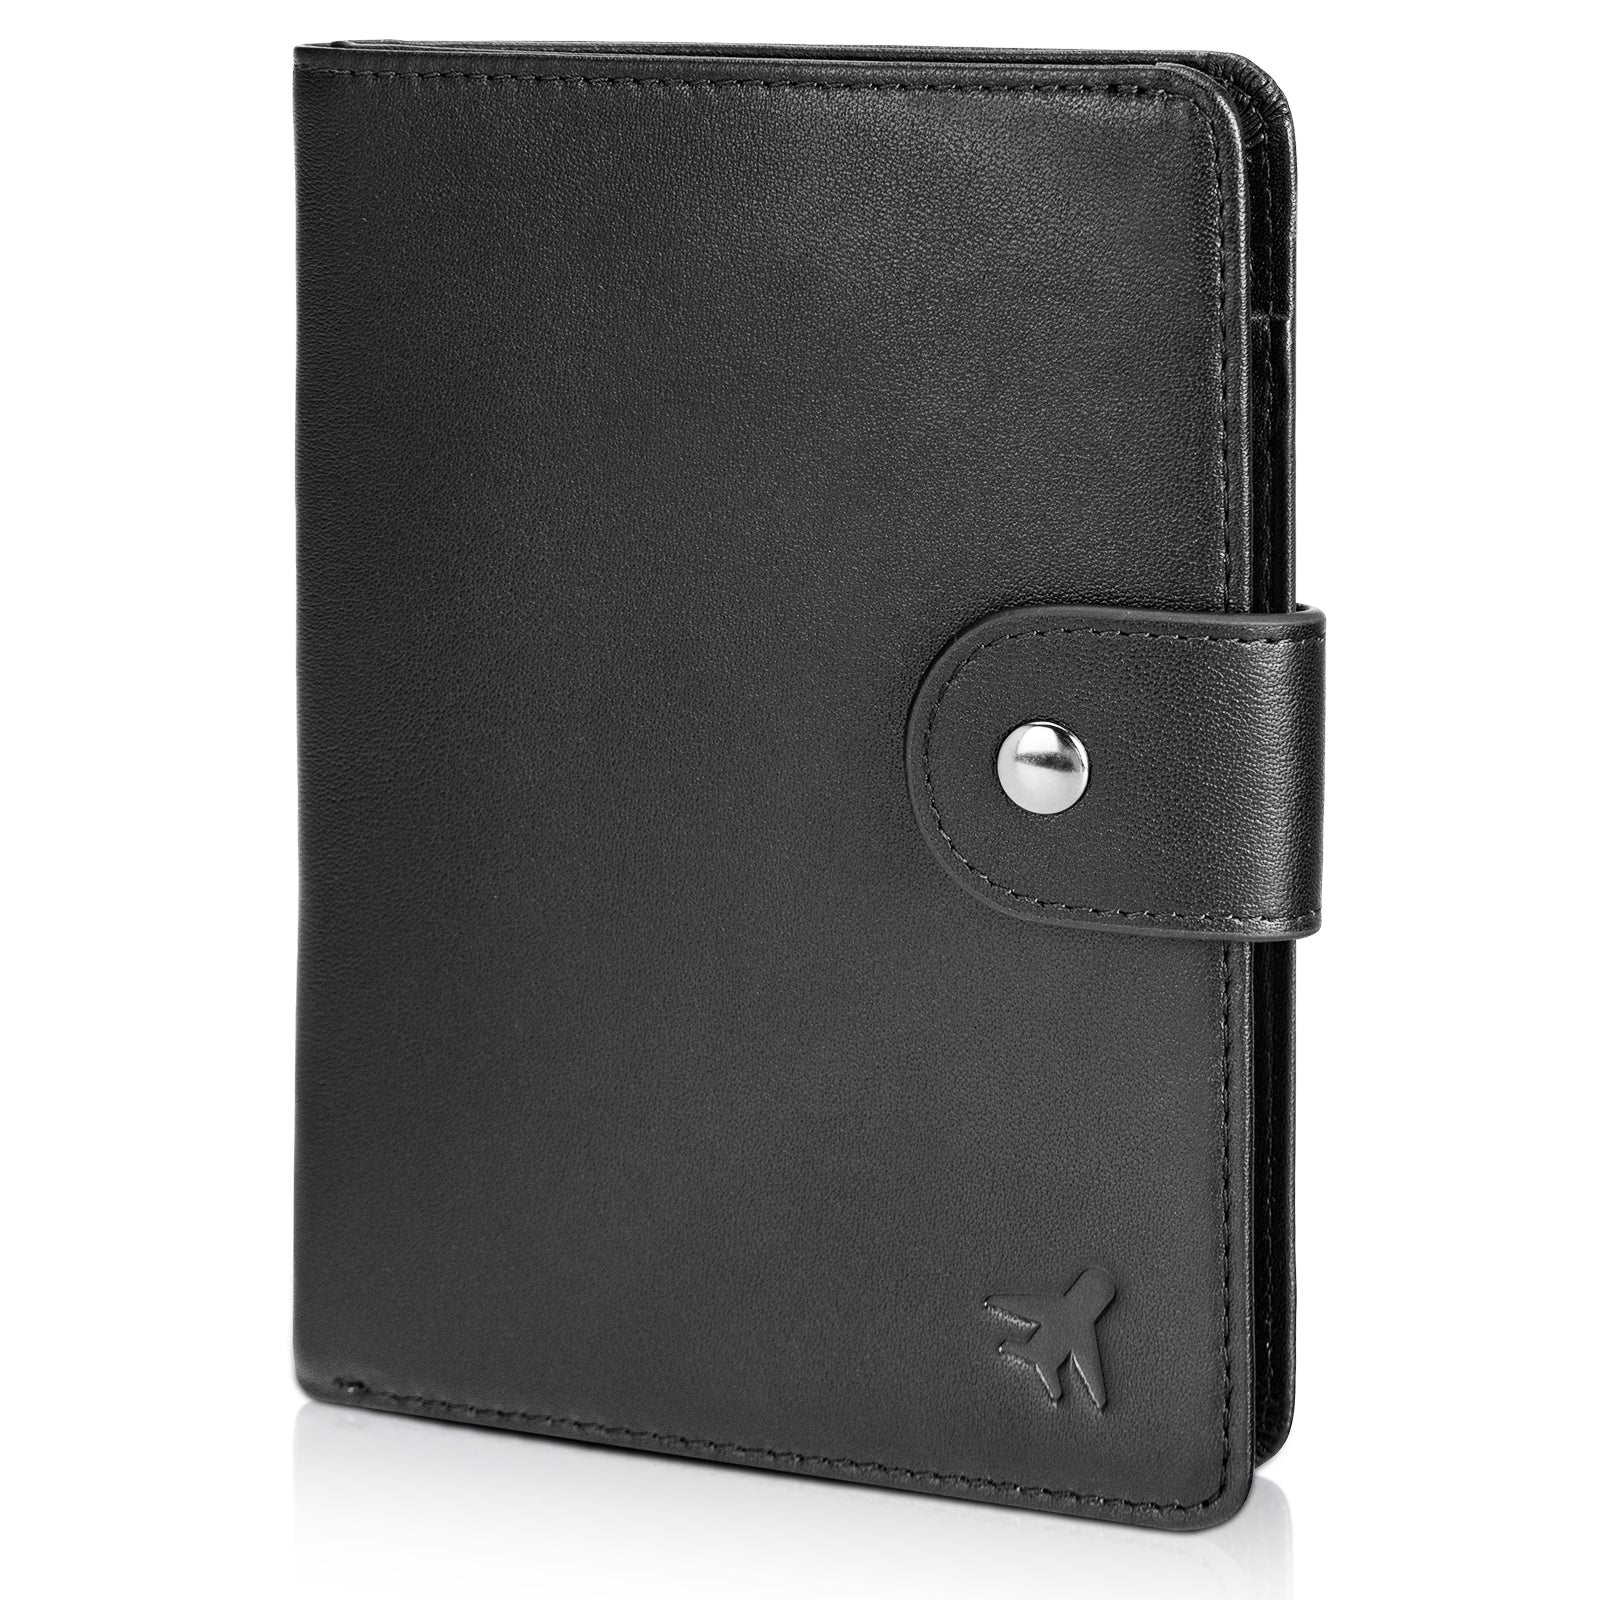 Polare Full Grain Leather Snap Bifold Travel Passport Holder (Black)